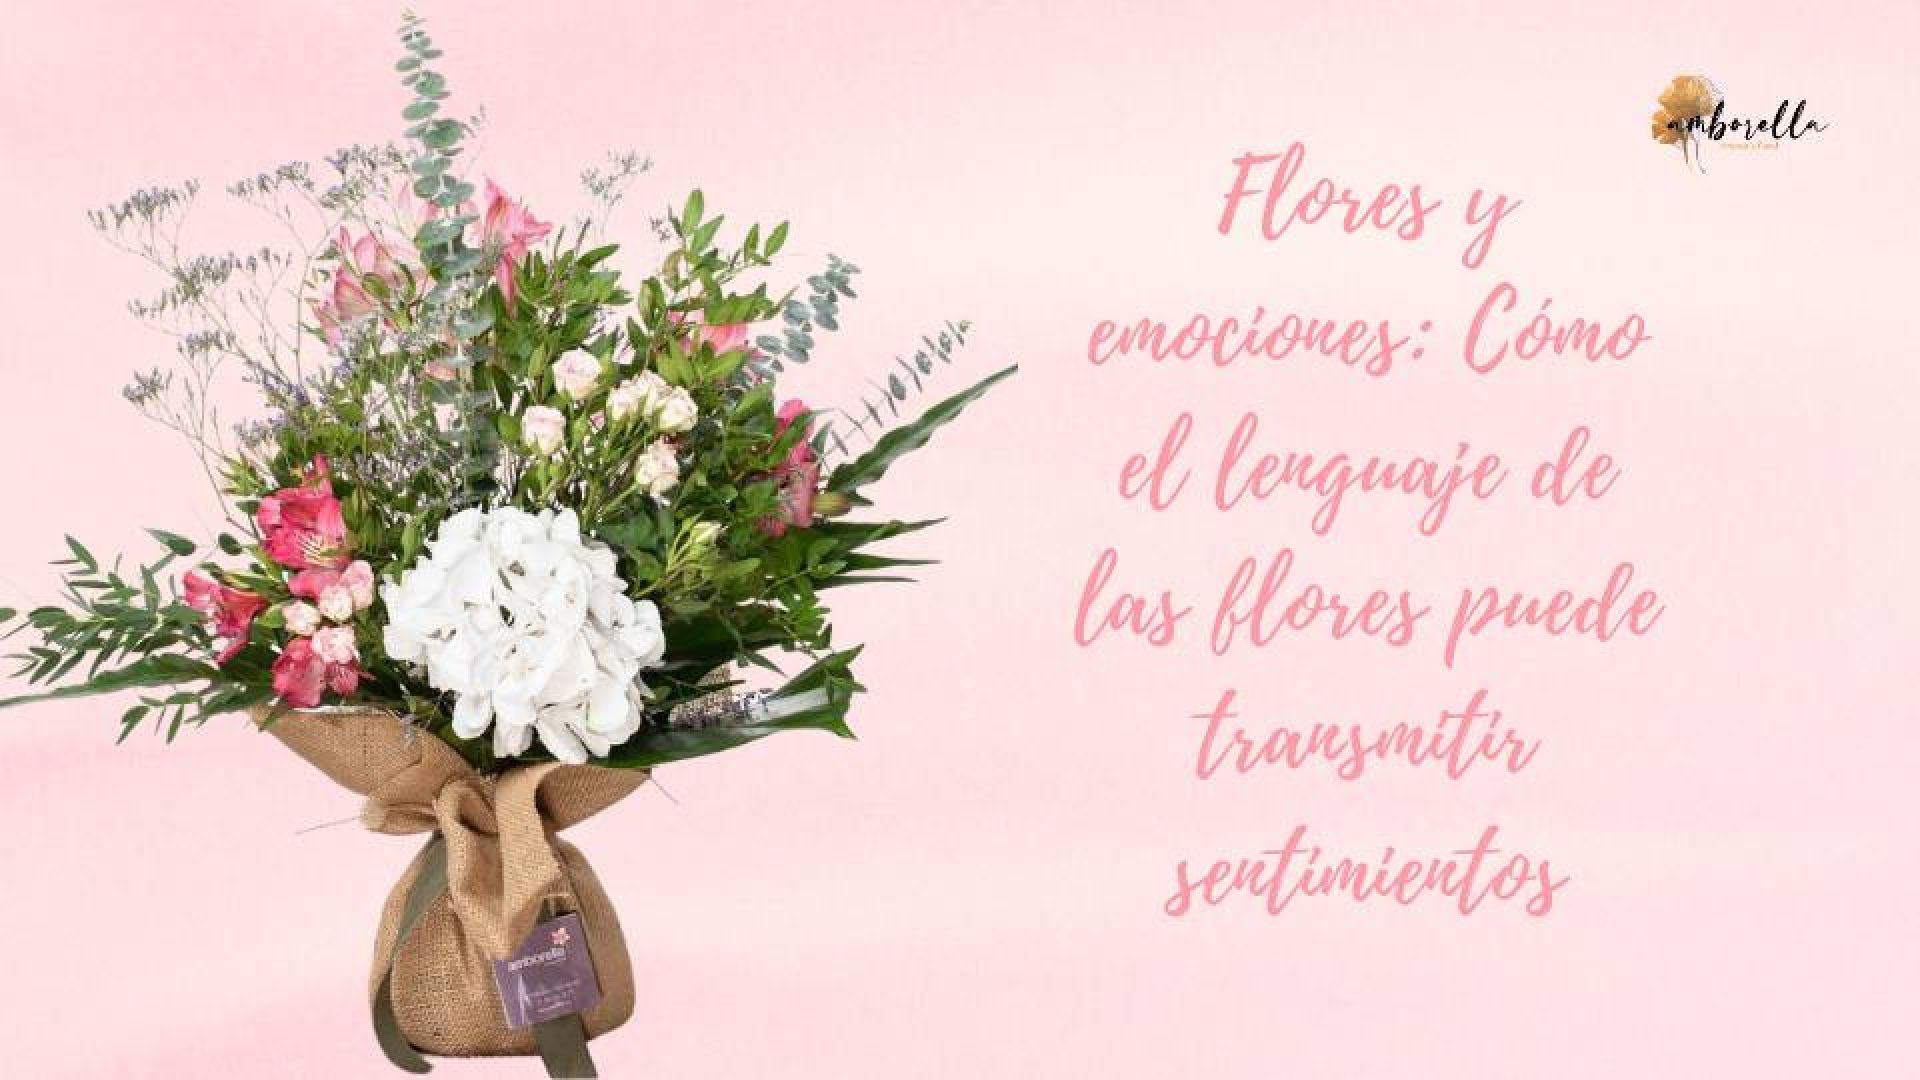 Flores y emociones: Cómo el lenguaje de las flores puede transmitir sentimientos - ▷Floristería Madrid-Flores a domicilio Madrid▷Floristería Amborella